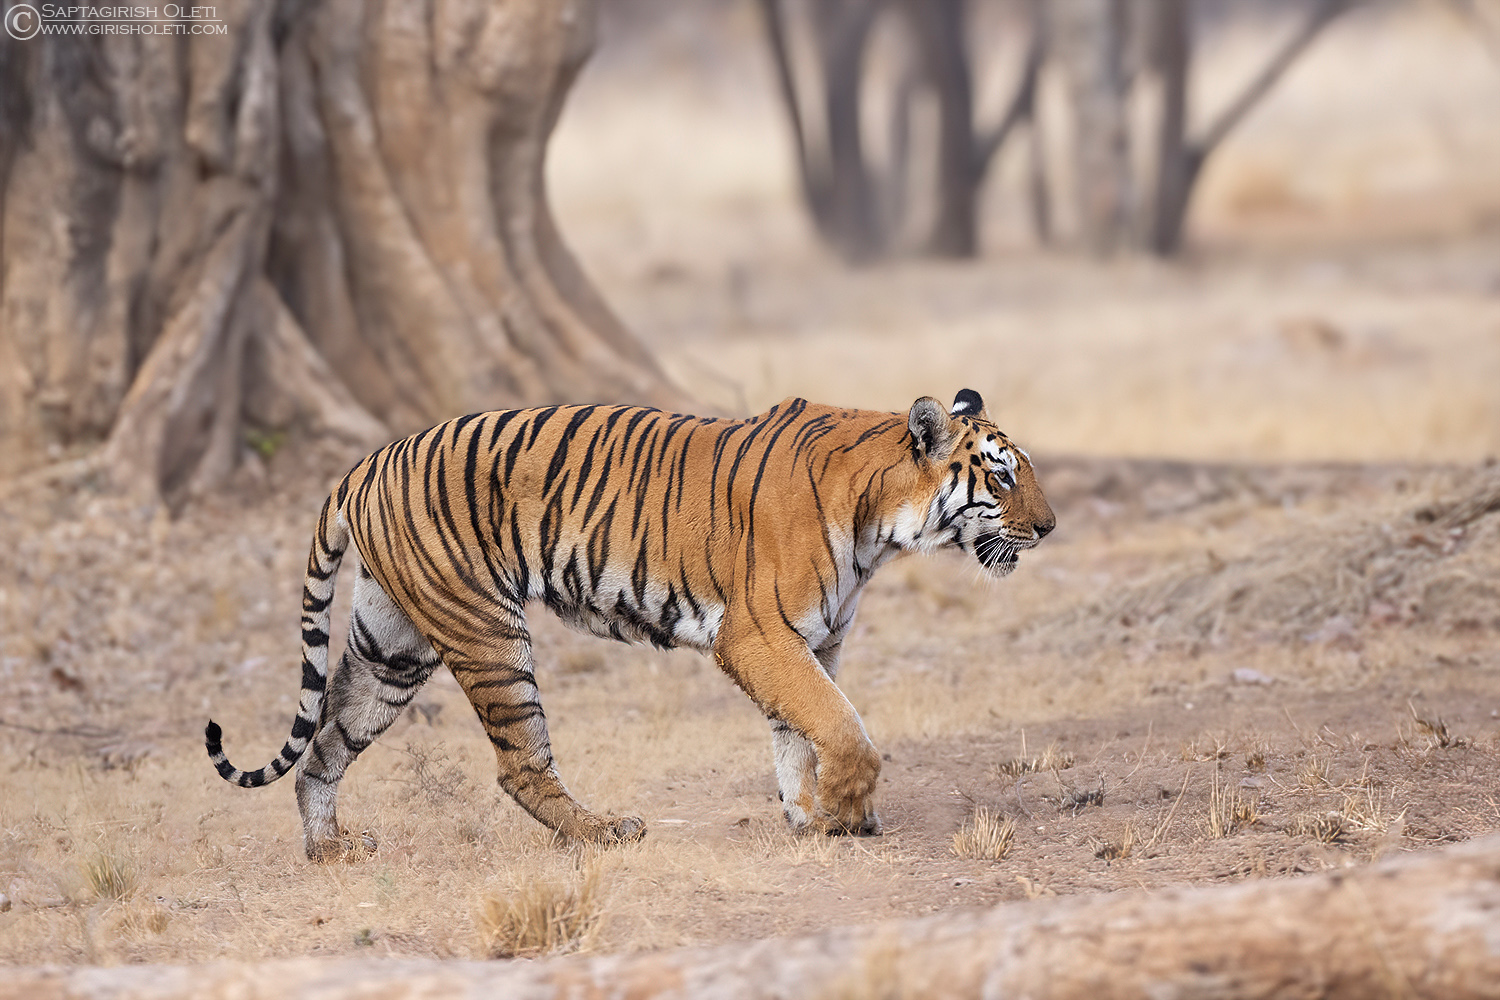 Tiger photographed at Tadoba, India